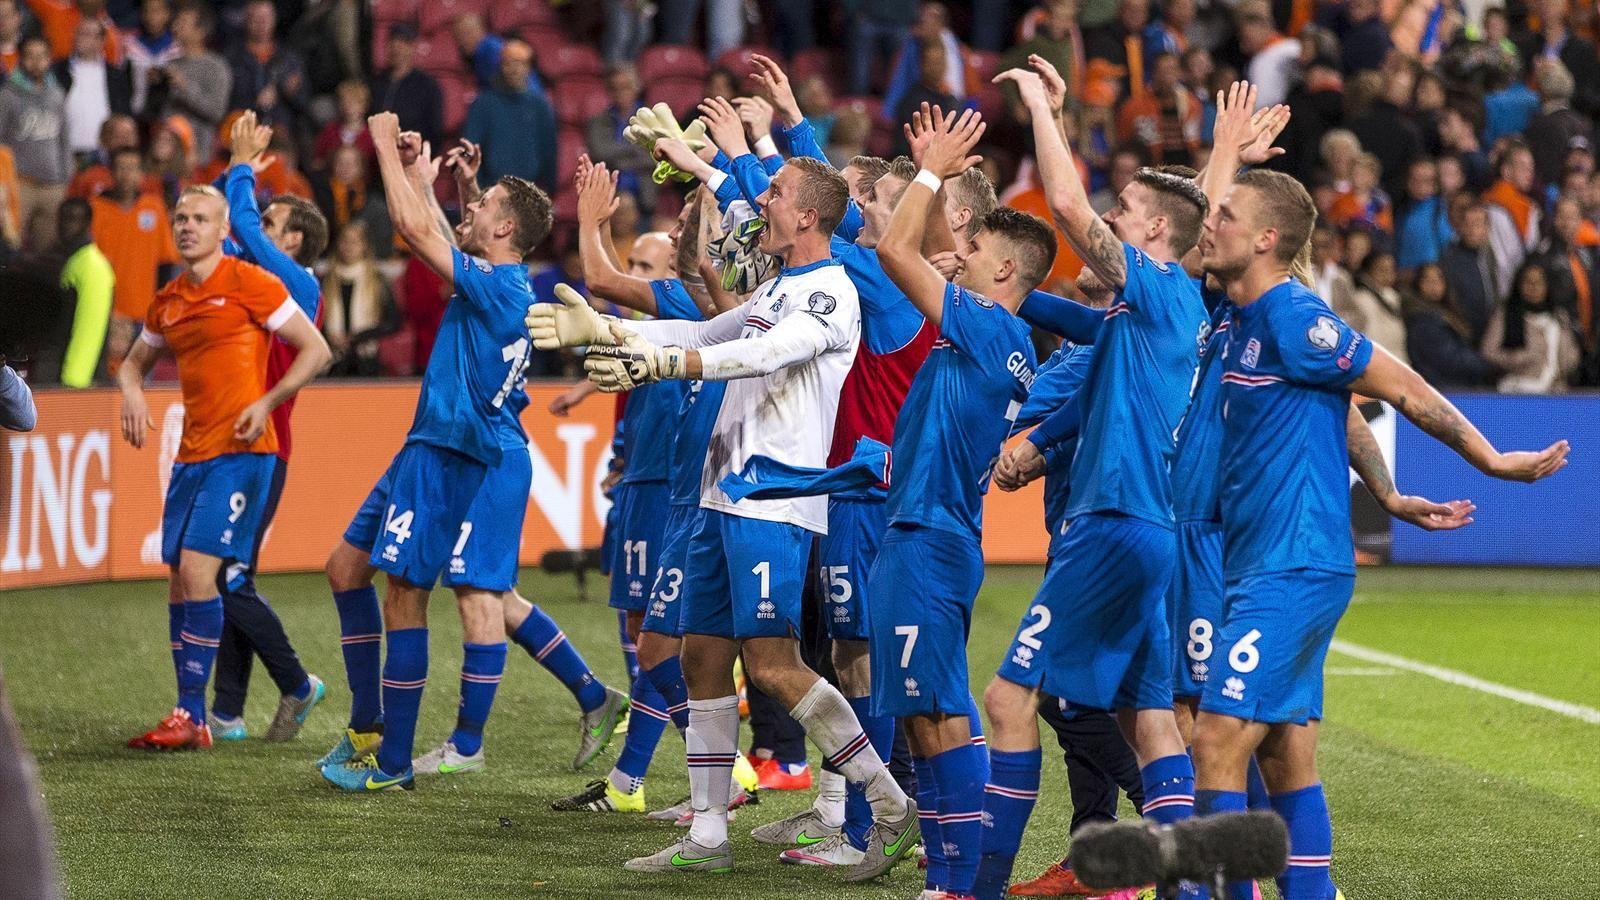 Euro 2016 Beijing Fans: Elvar Berg of Iceland